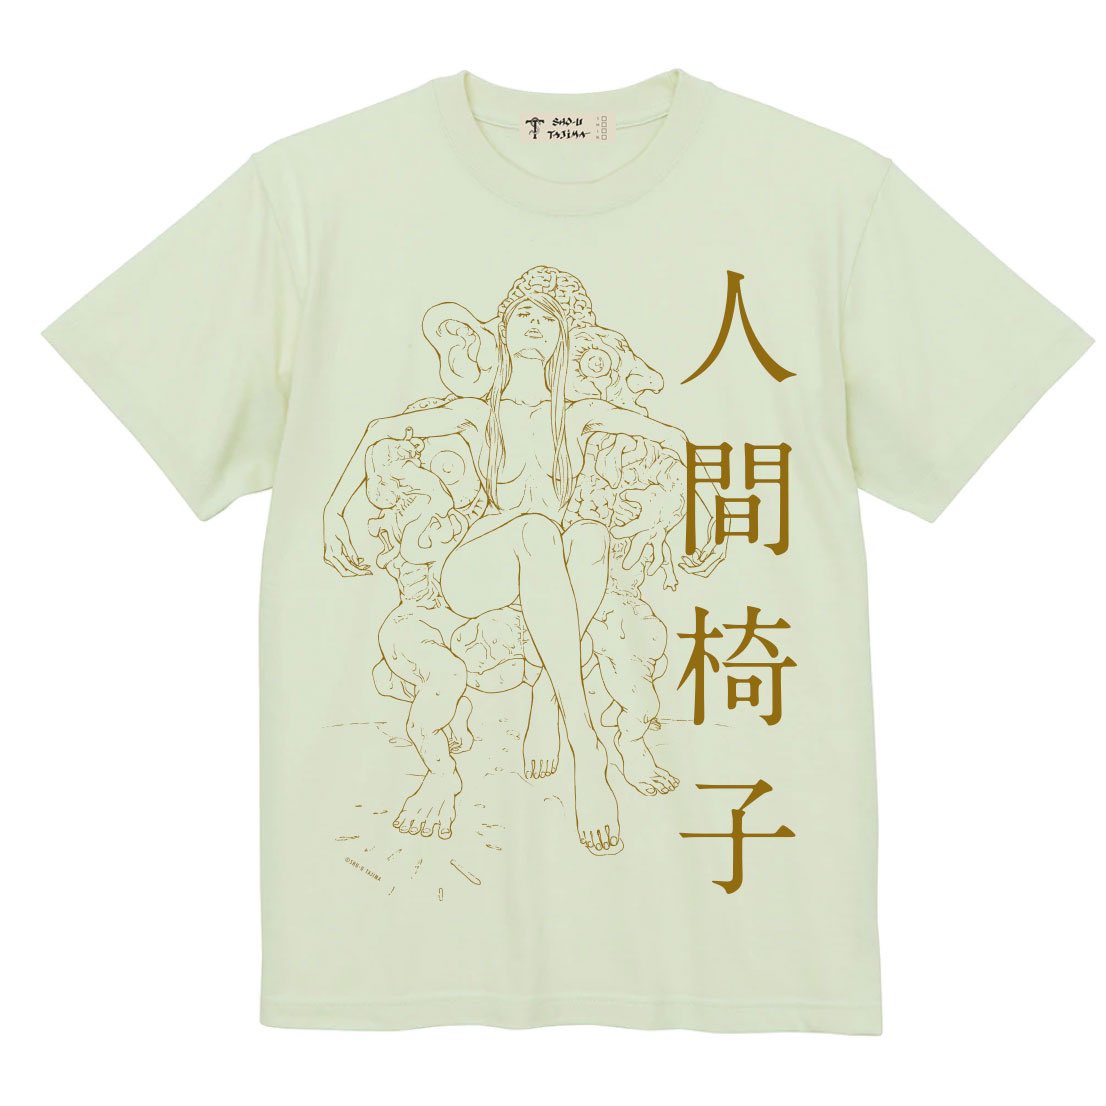 新作Tシャツ
其の②「人間椅子Tシャツ」
ボディは墨とフロストグリーン。
カラー原画とは別にペン入れされた、モノクロの線画がプリントされたTシャツだぜ。

#田島昭宇 